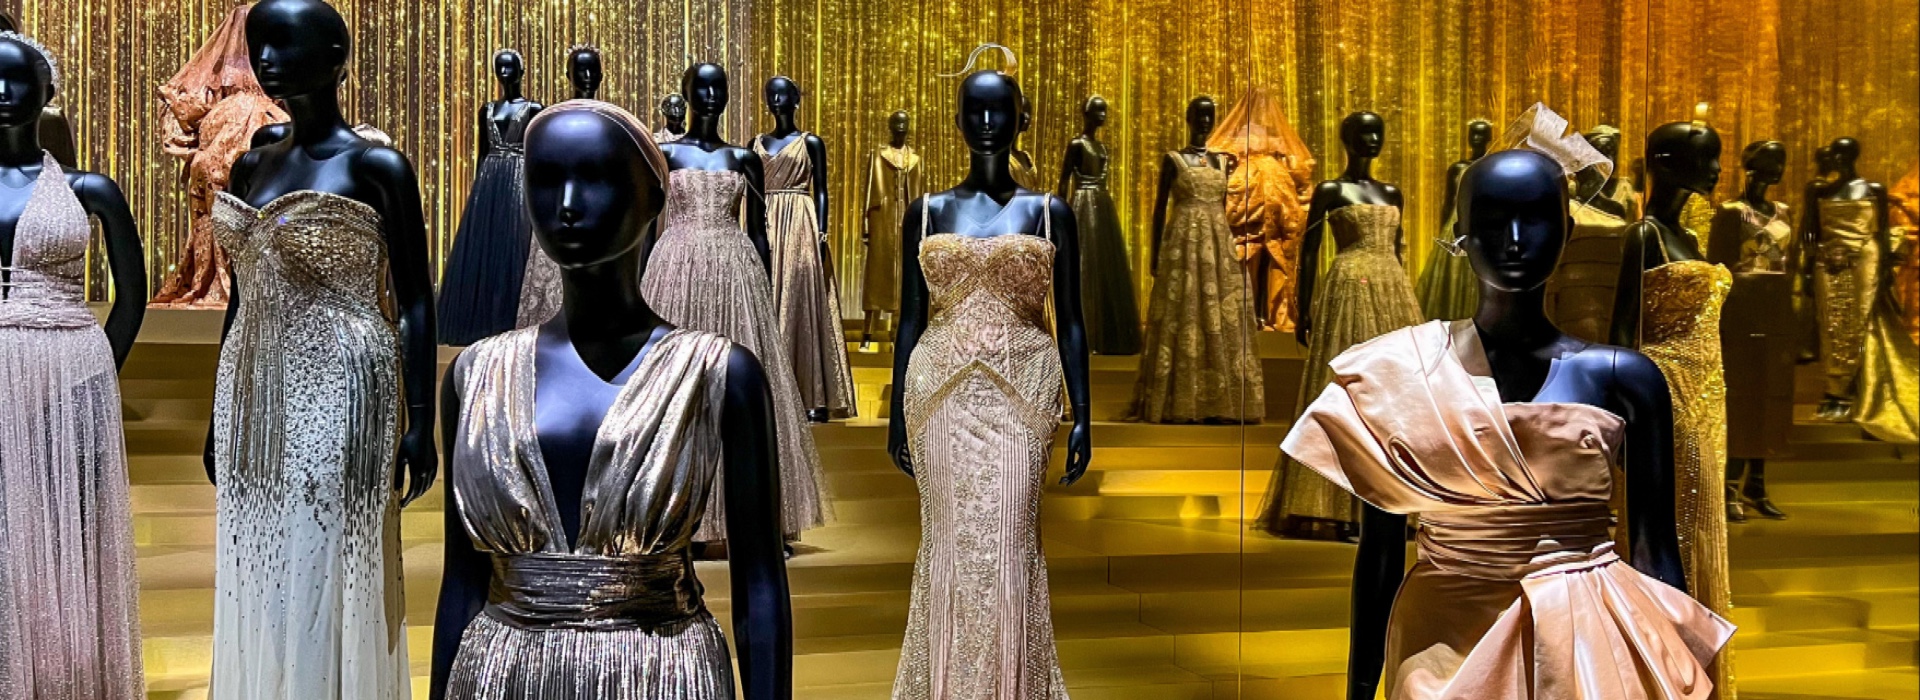 Manufactures Dior sotto amministrazione giudiziaria: nuovo scandalo nel mondo della moda